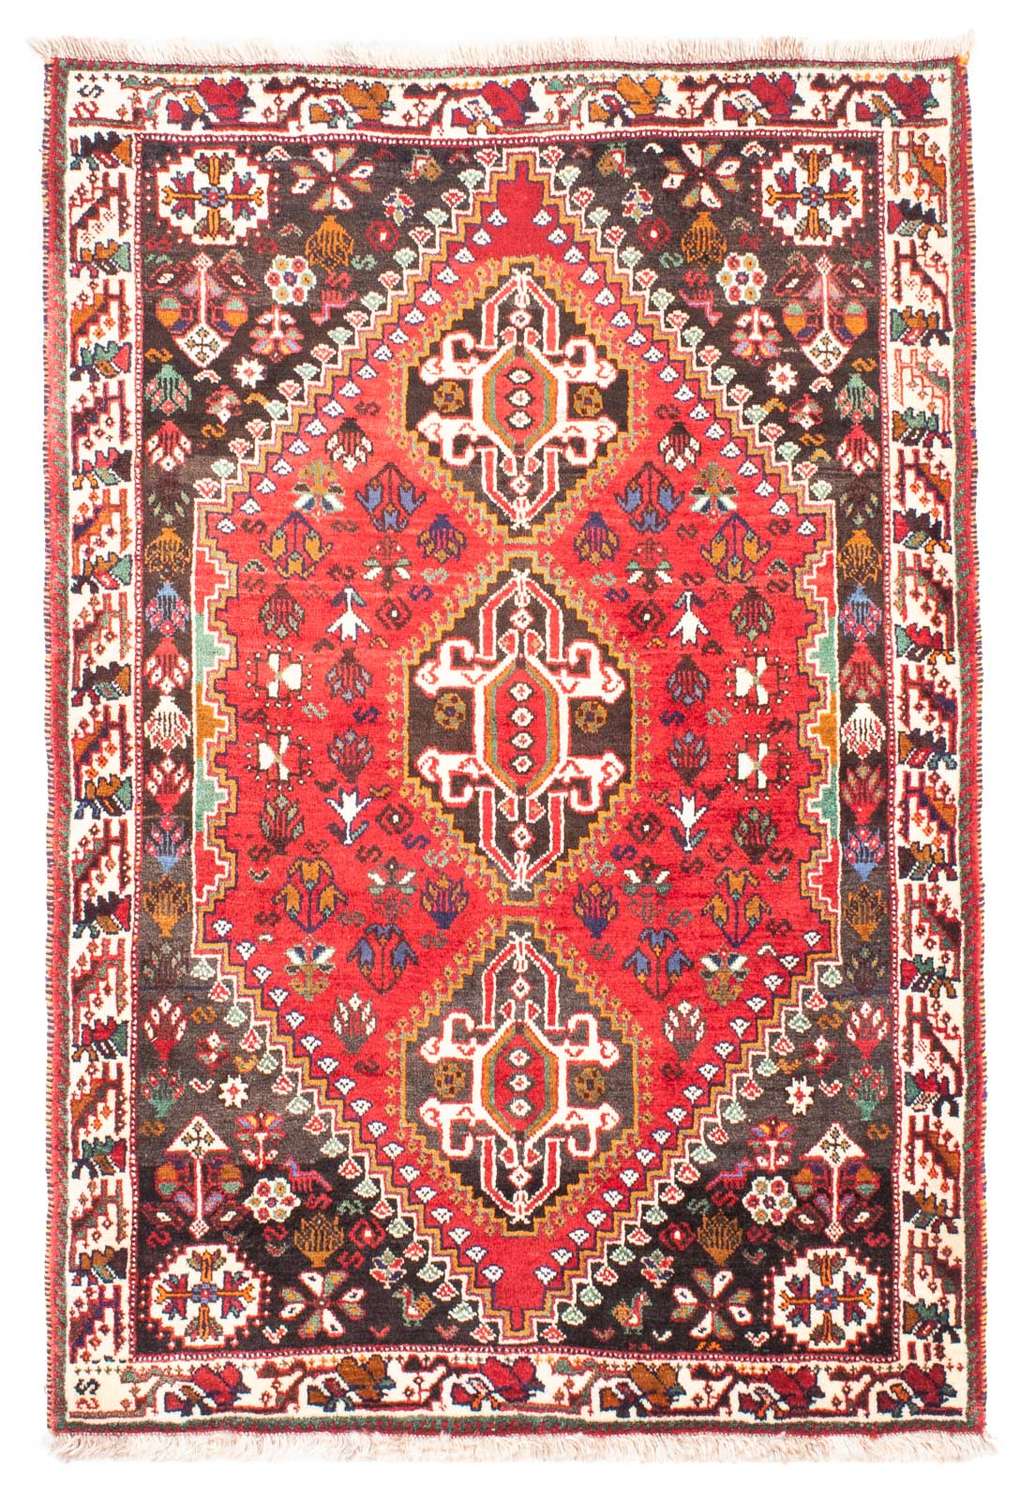 Alfombra persa - Nómada - 162 x 114 cm - rojo oscuro